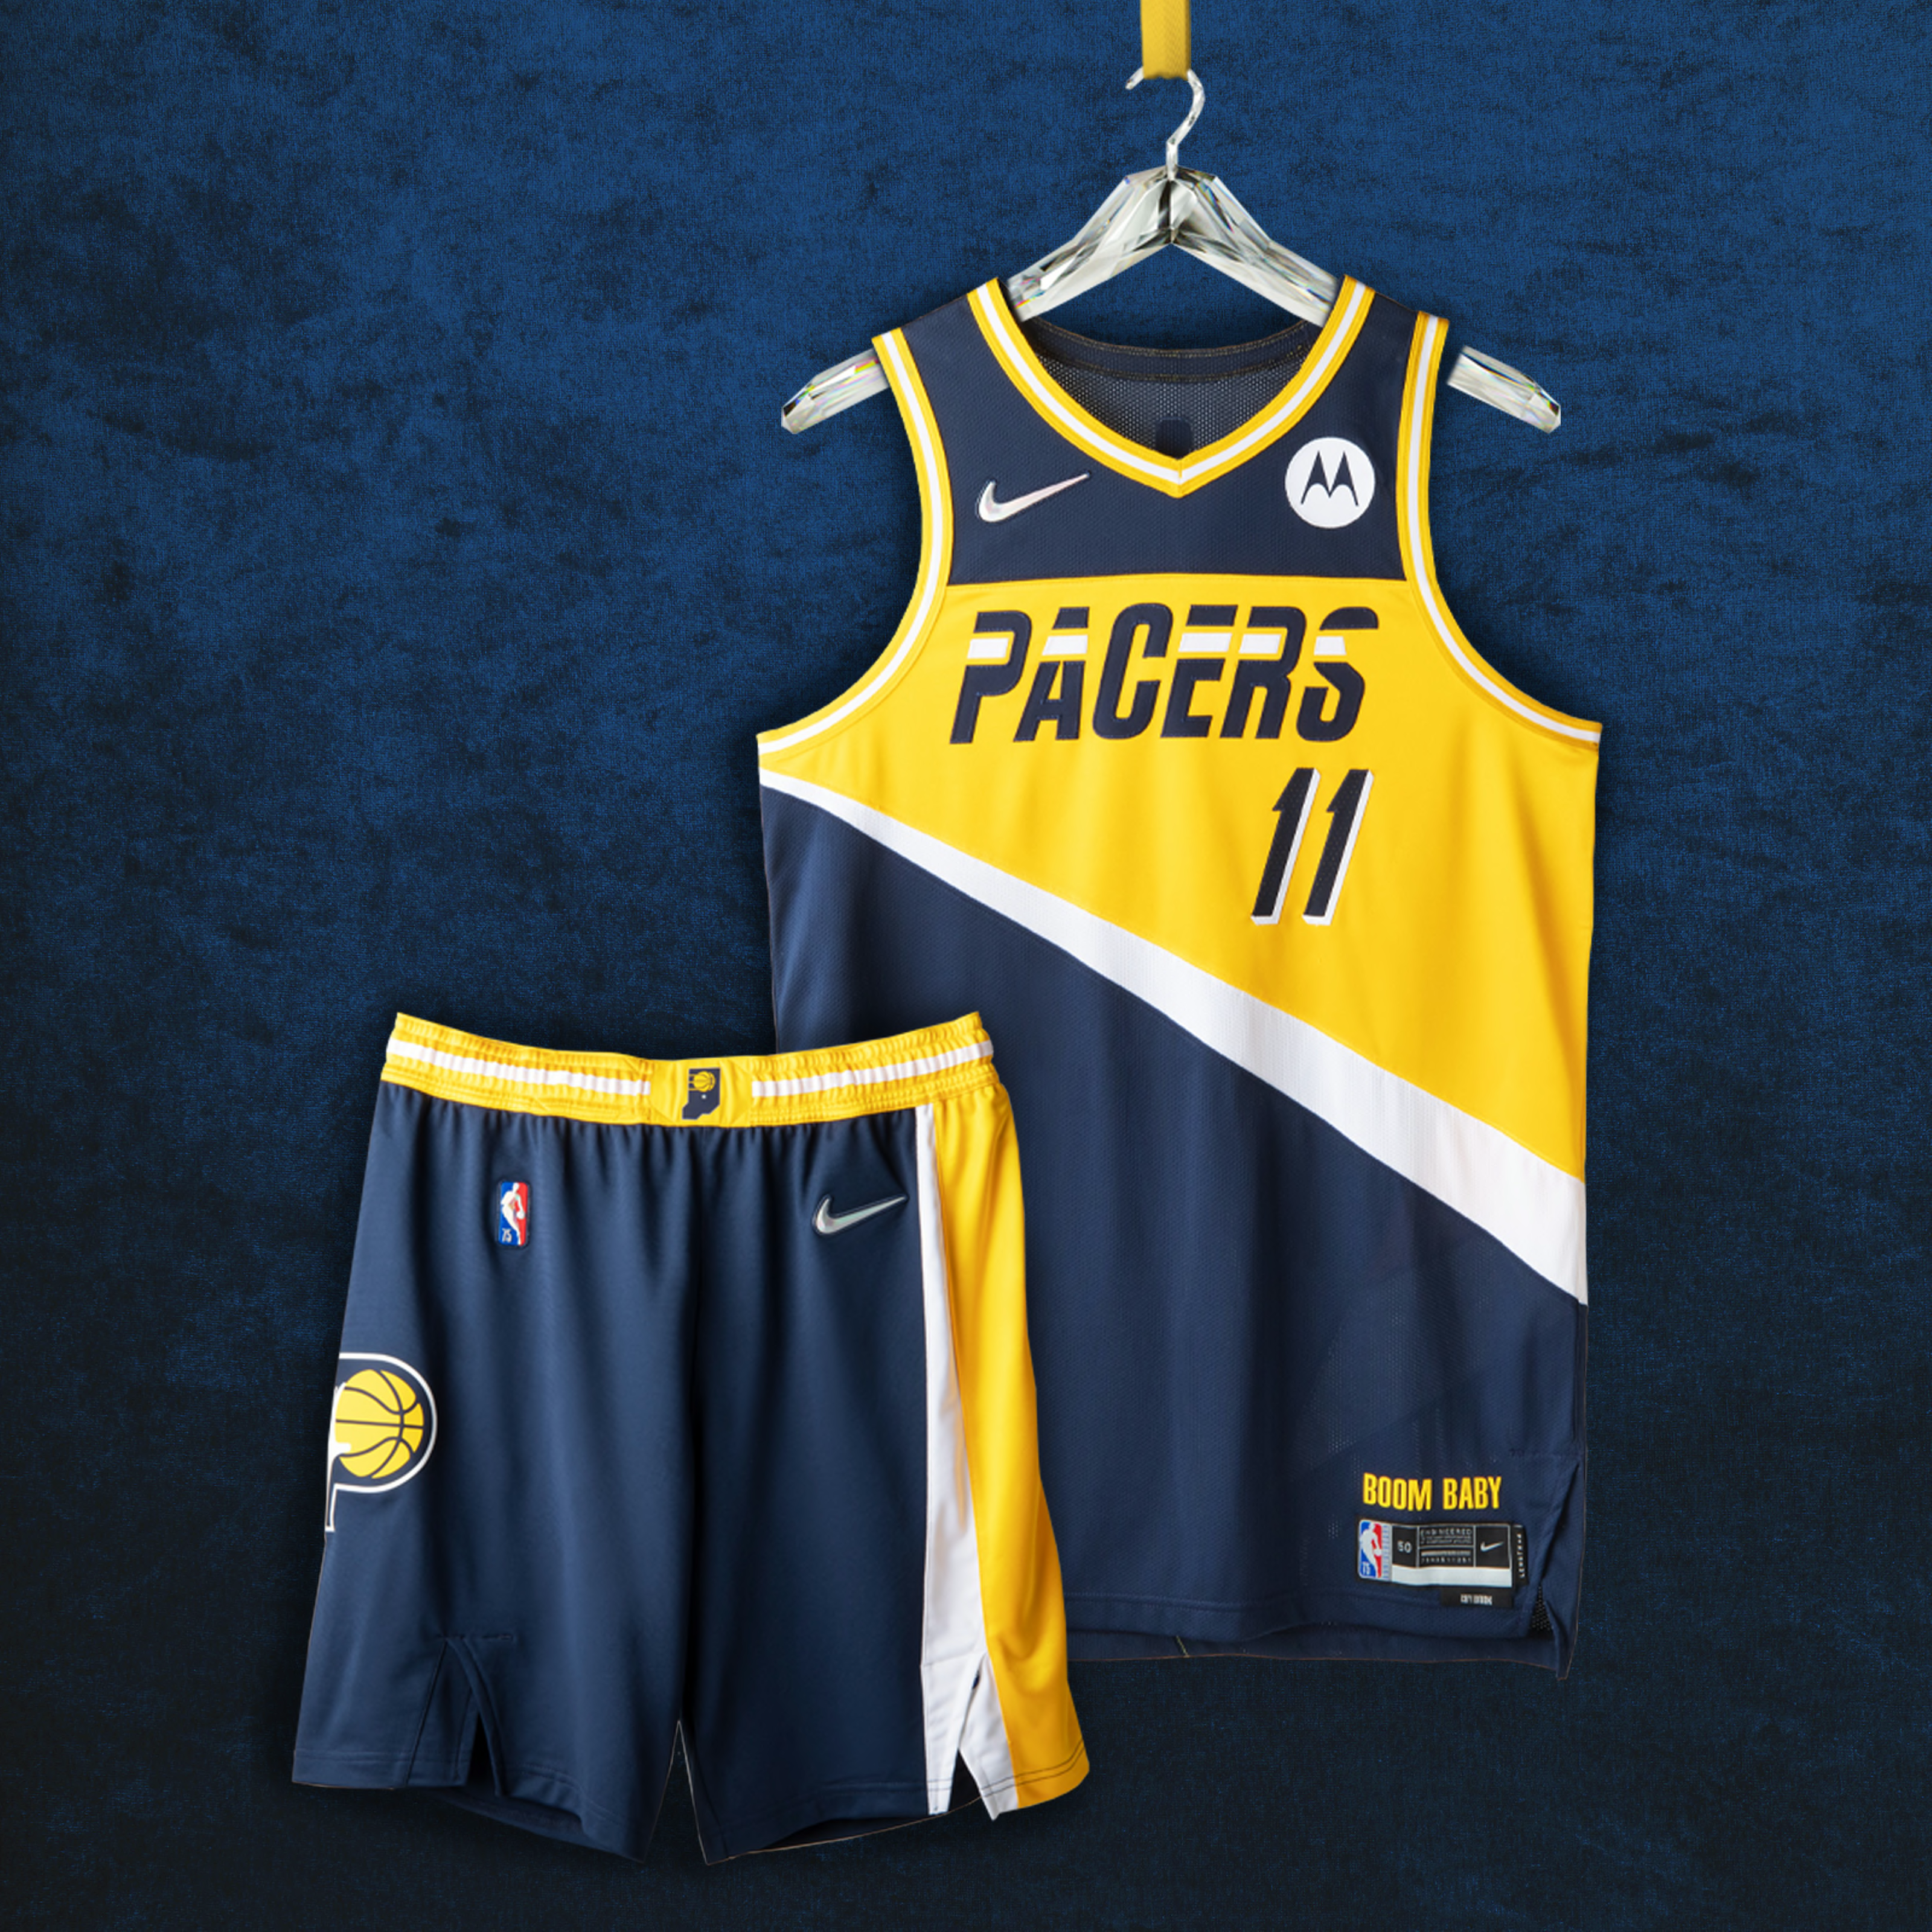 Sociedad de múltiples fines Finalmente Order your Indiana Pacers Nike City Edition gear today